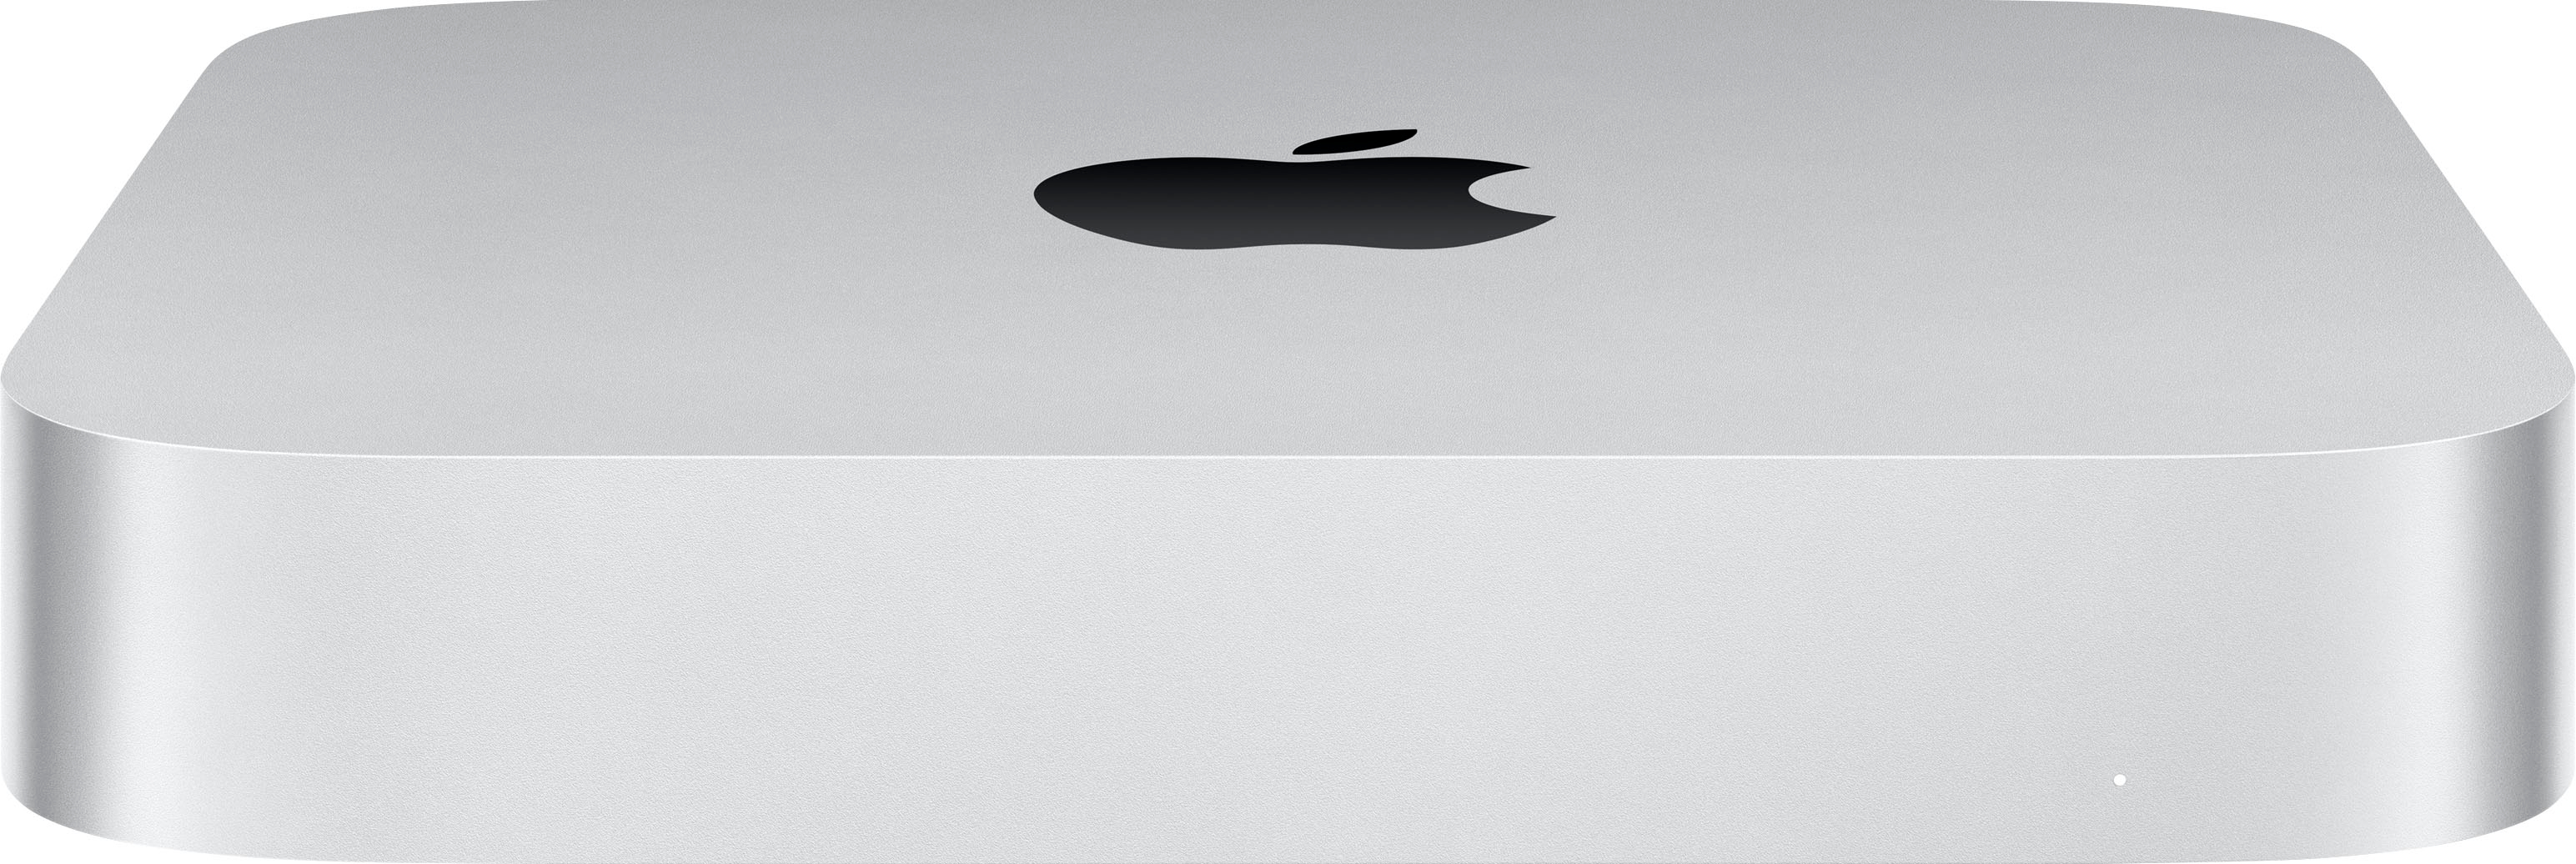 M1 Mac mini vs M2 Mac mini: which tiny Apple PC is best?